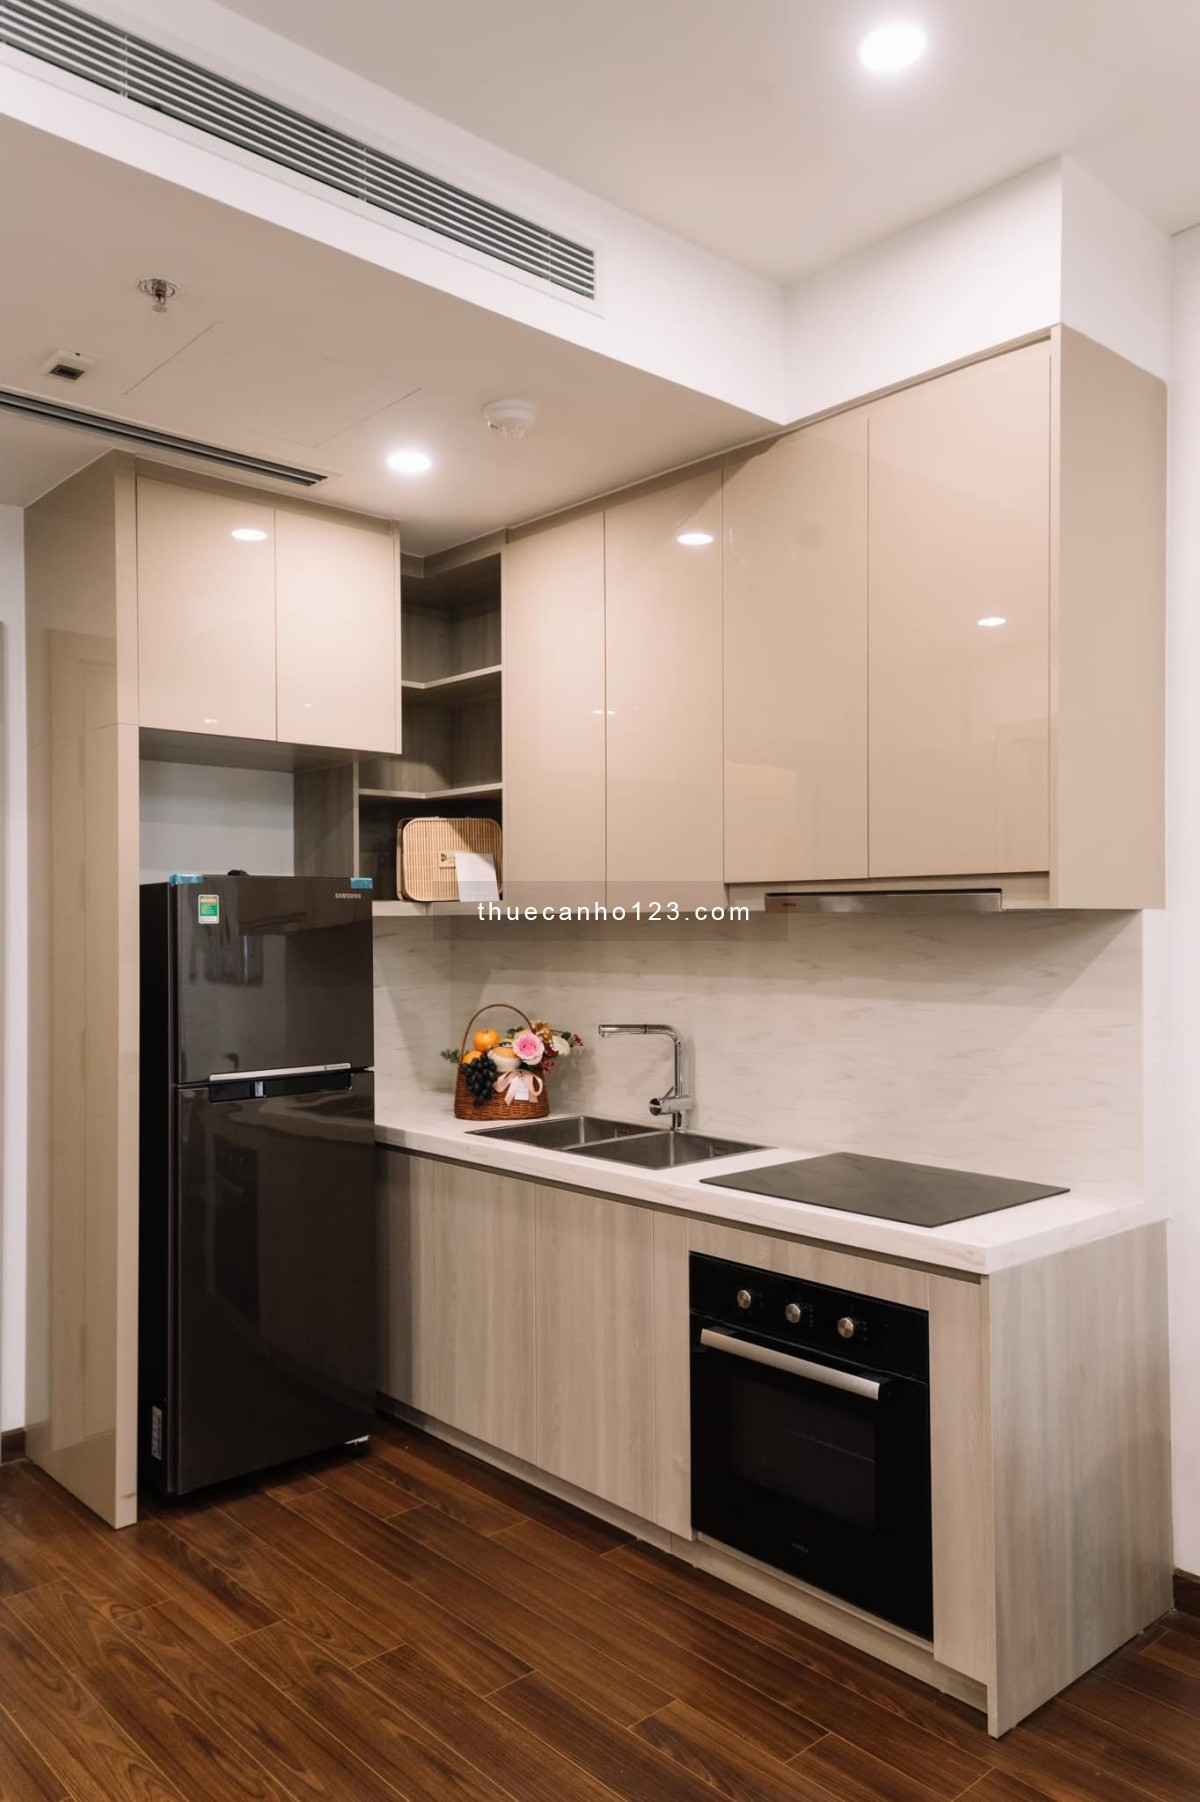 Khai xuân 500k-1tr cho khách chốt thuê căn hộ 1PN 43m2 Vinhomes Smart City dưới đây